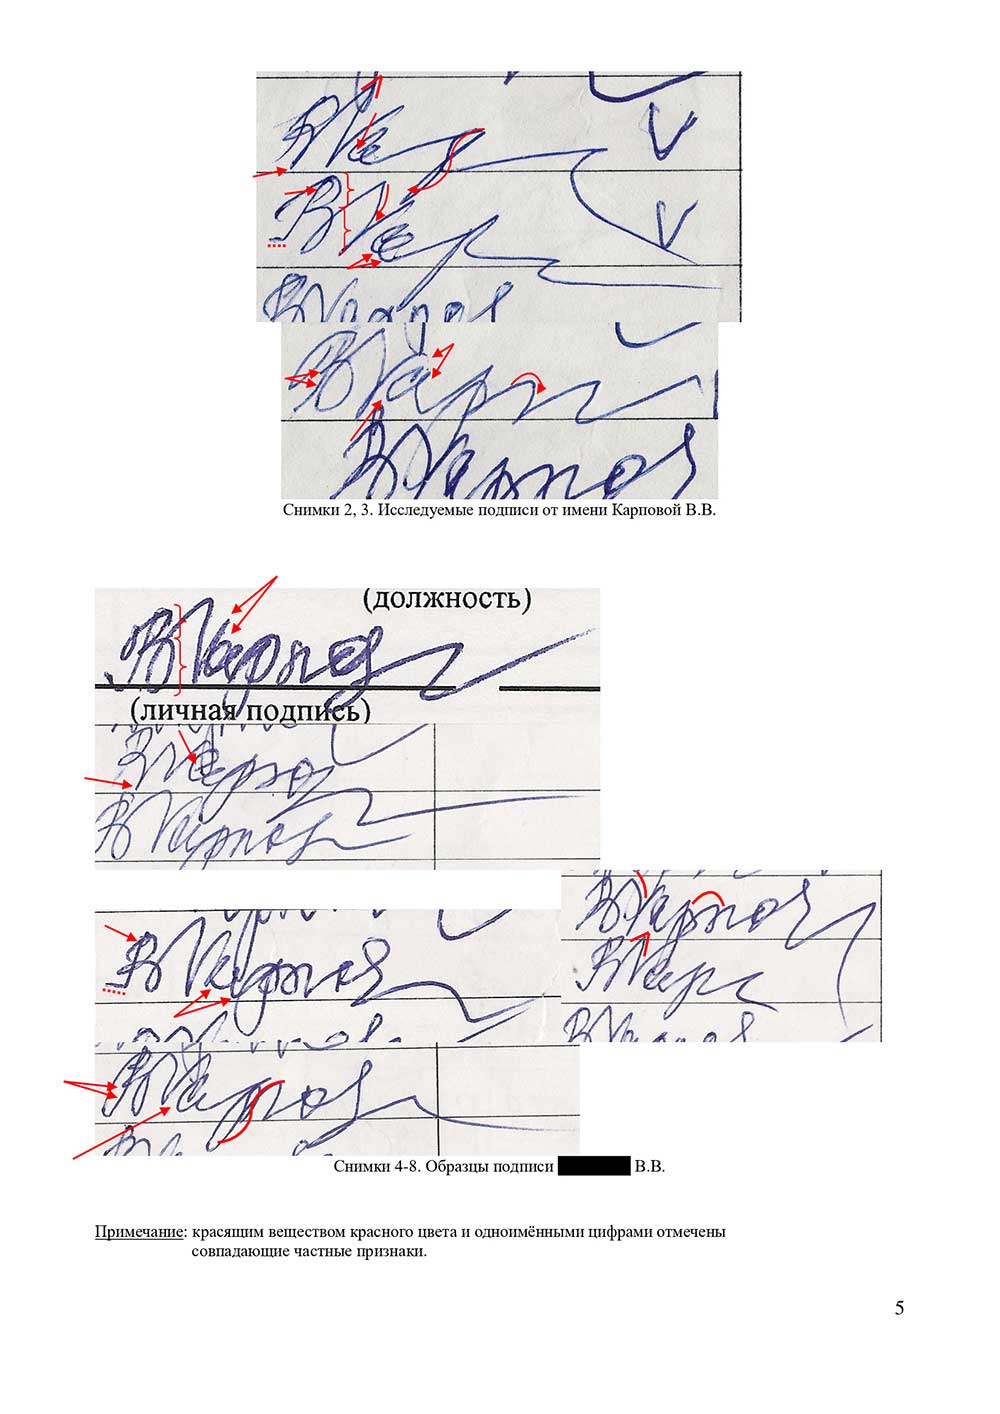 Судебная и досудебная почерковедческая экспертиза документов. Графологическая экспертиза почерка, подписи в Краснодаре